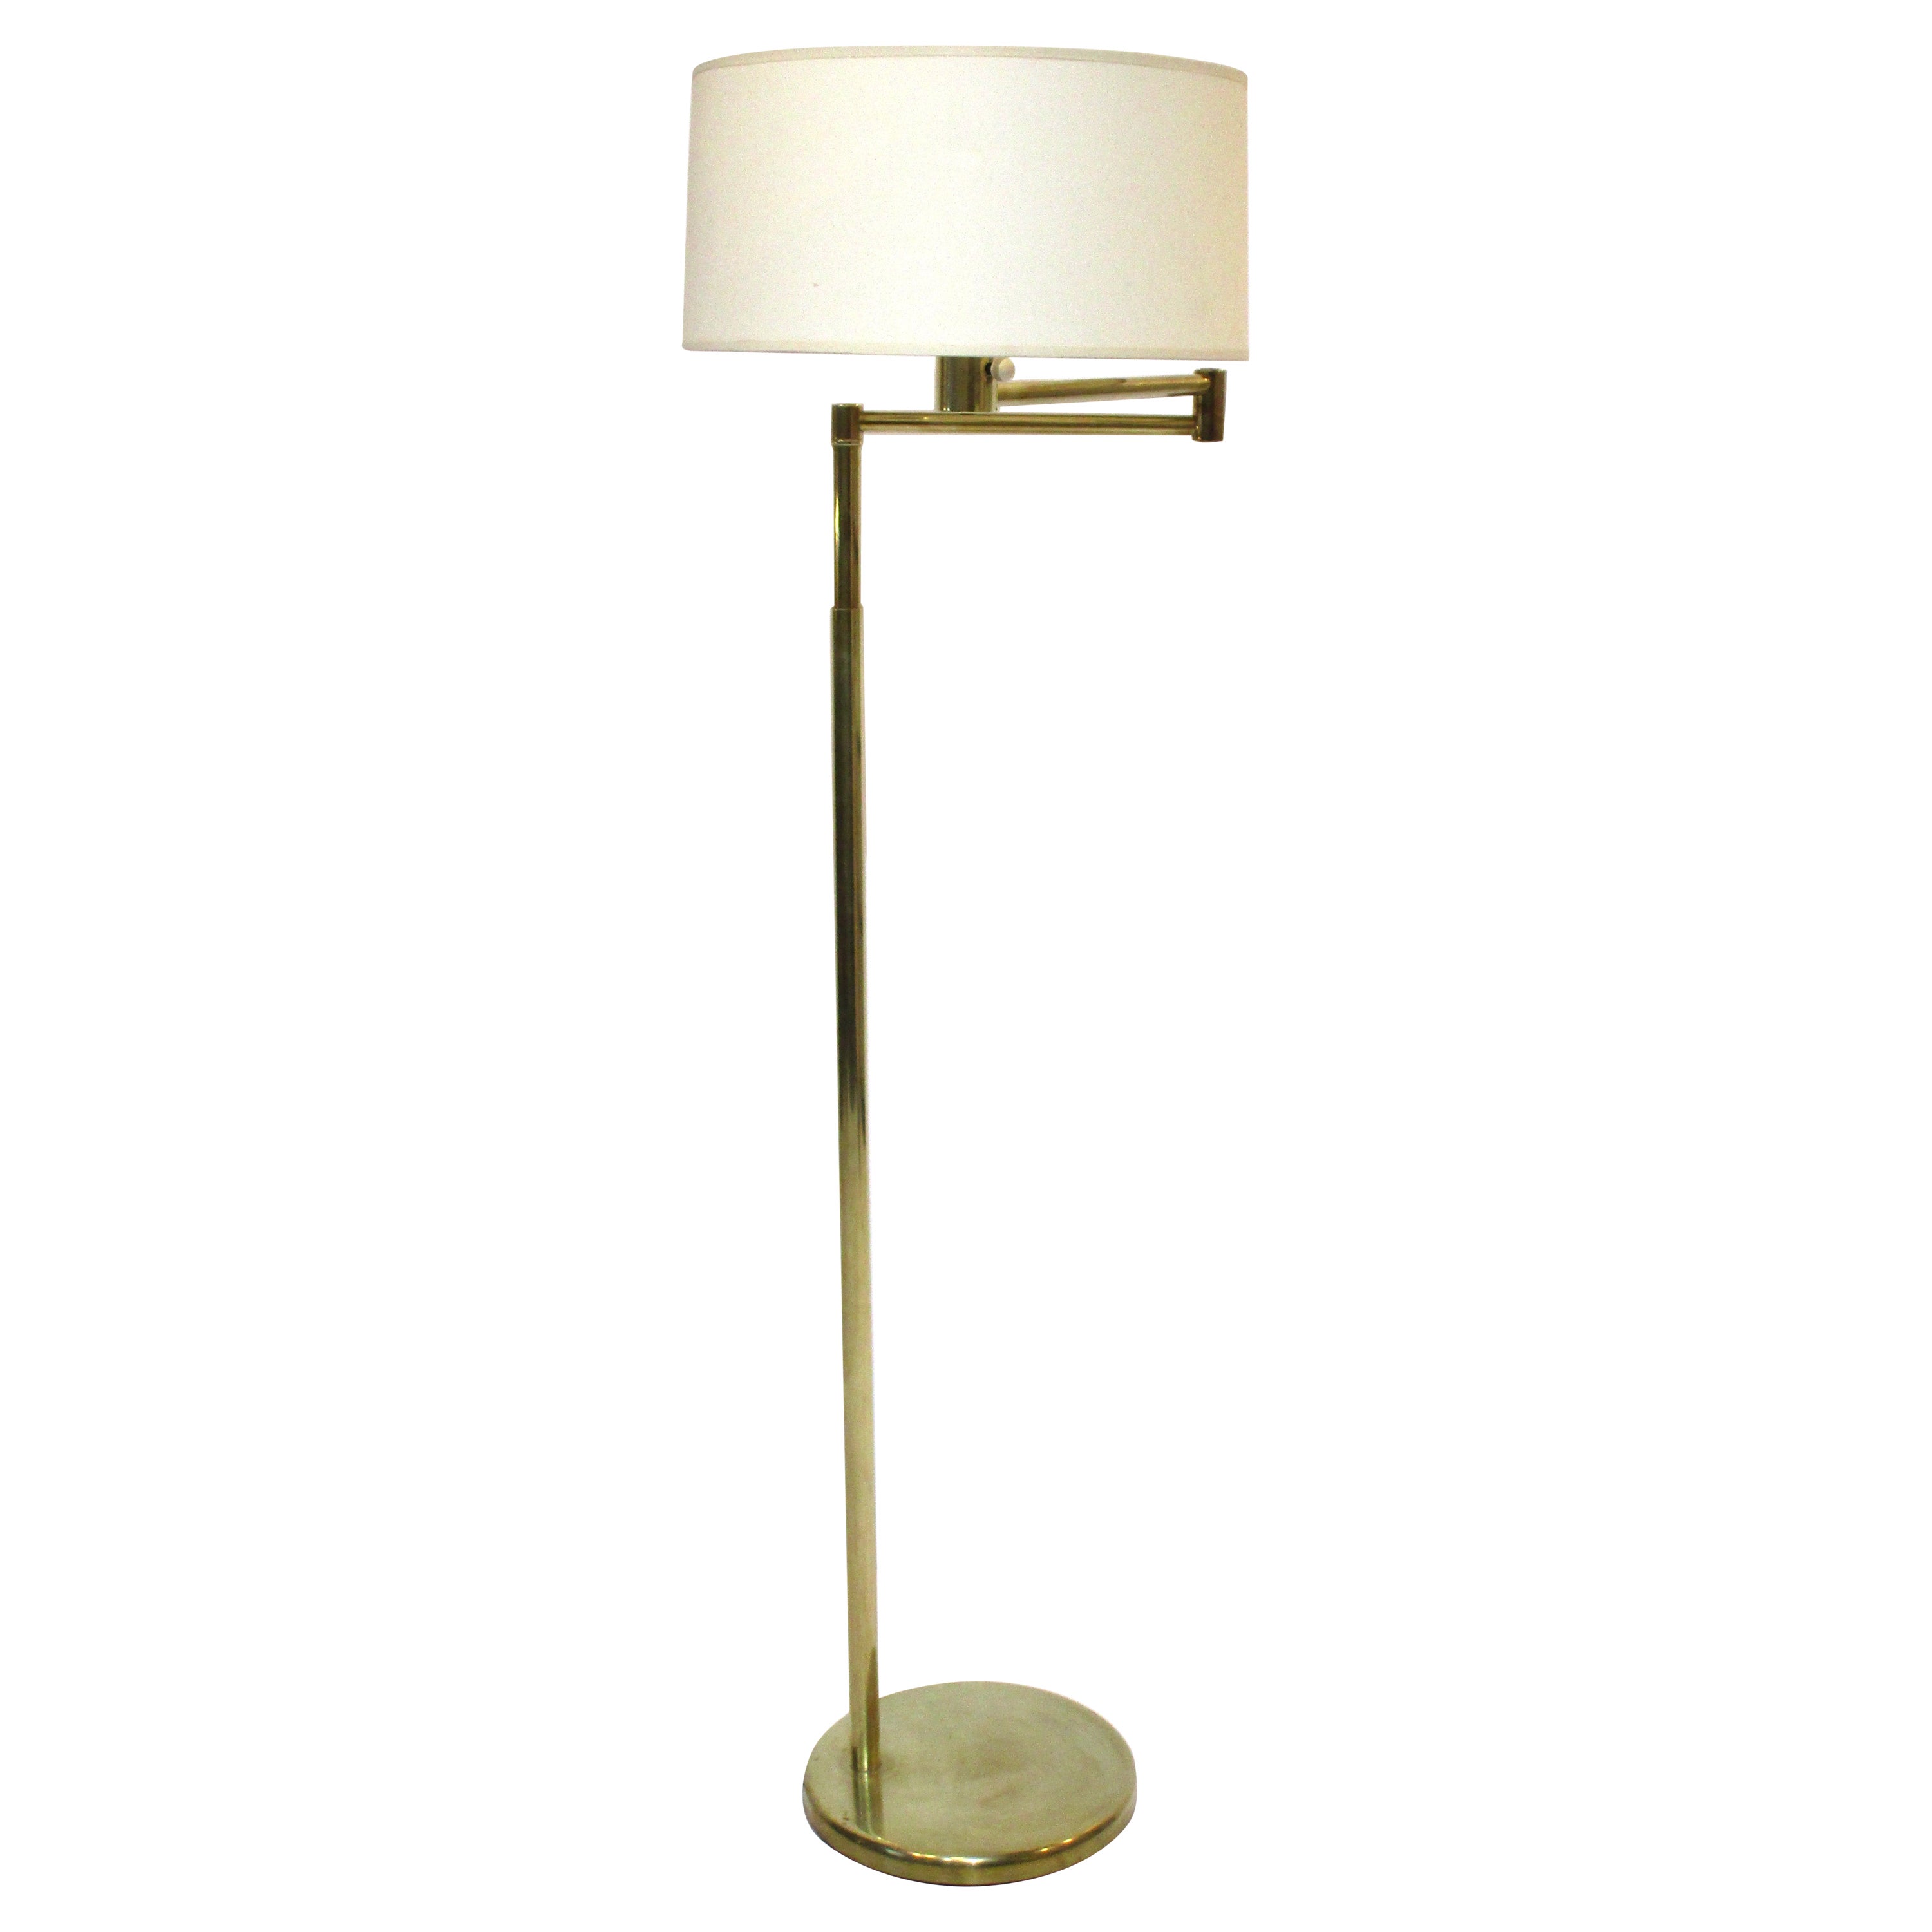 Brass Nessen Swing Arm Floor Lamp by Walter Von Nessen